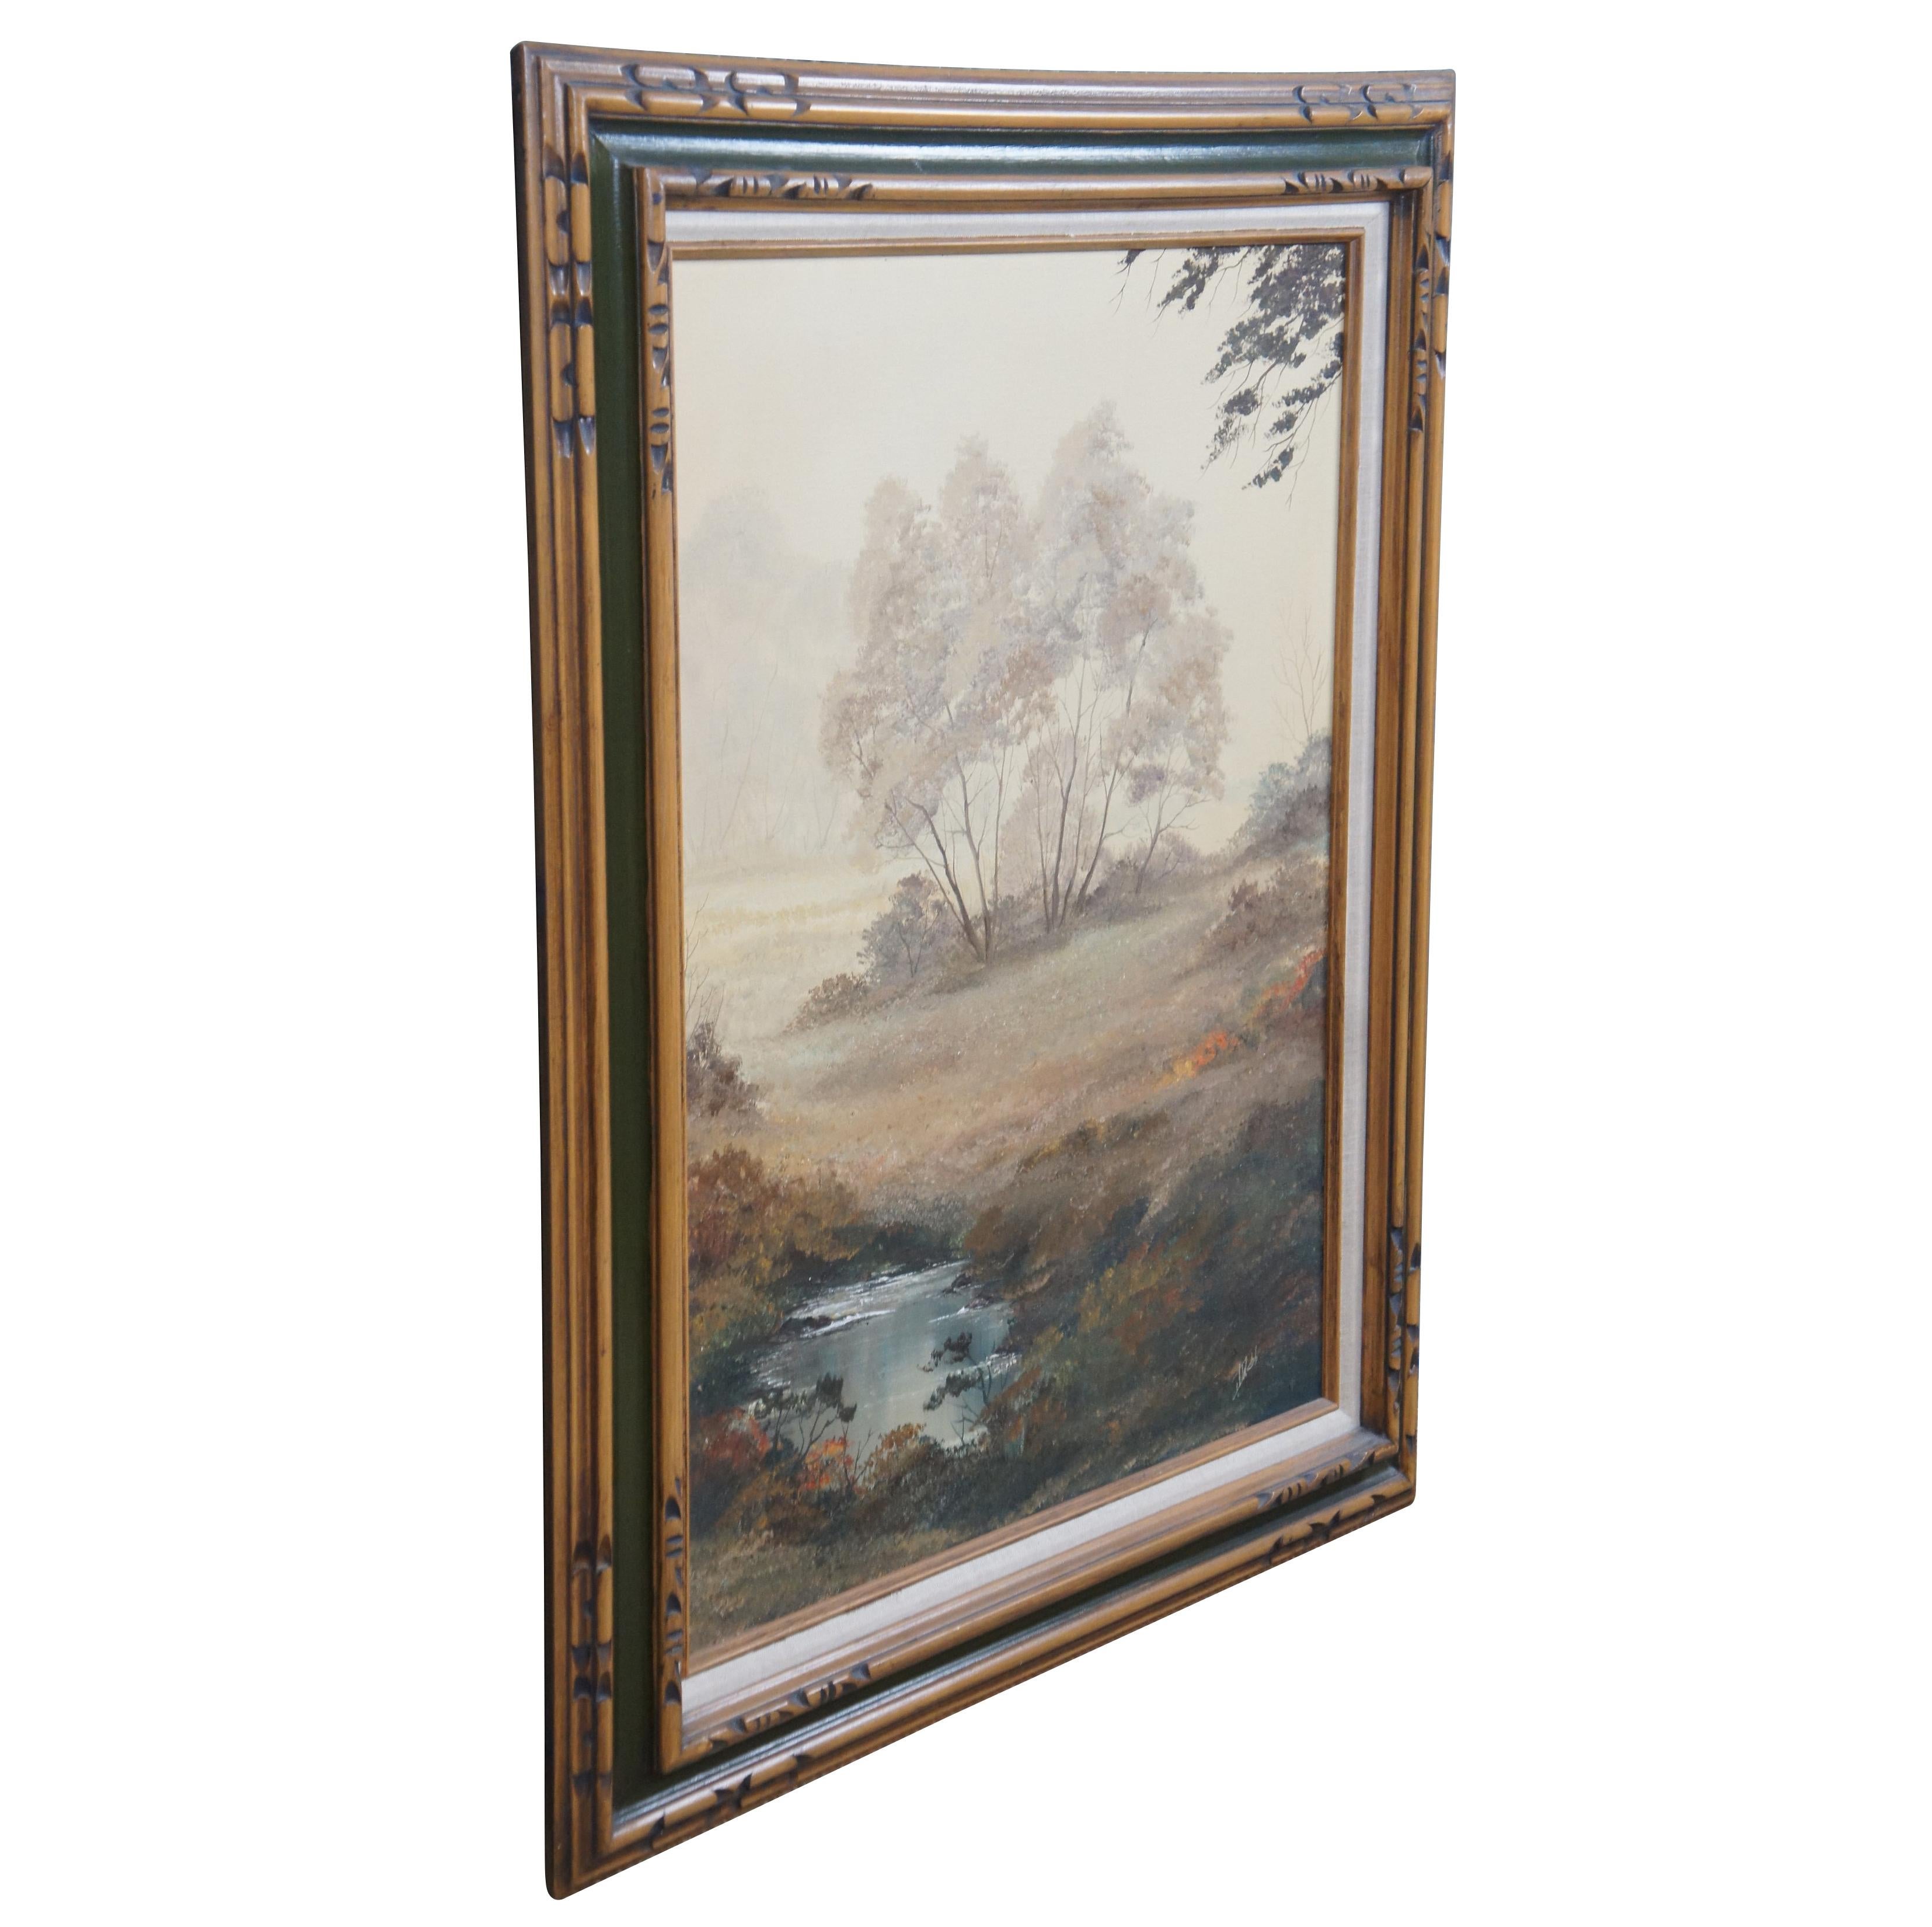 Peinture à l'huile vintage des années 1970. Il s'agit d'une vue à travers les bois par un jour de brouillard, montrant des arbres, des prairies et un étang. La toile est signée en bas à droite et encadrée en bois avec des accents caverneux et des